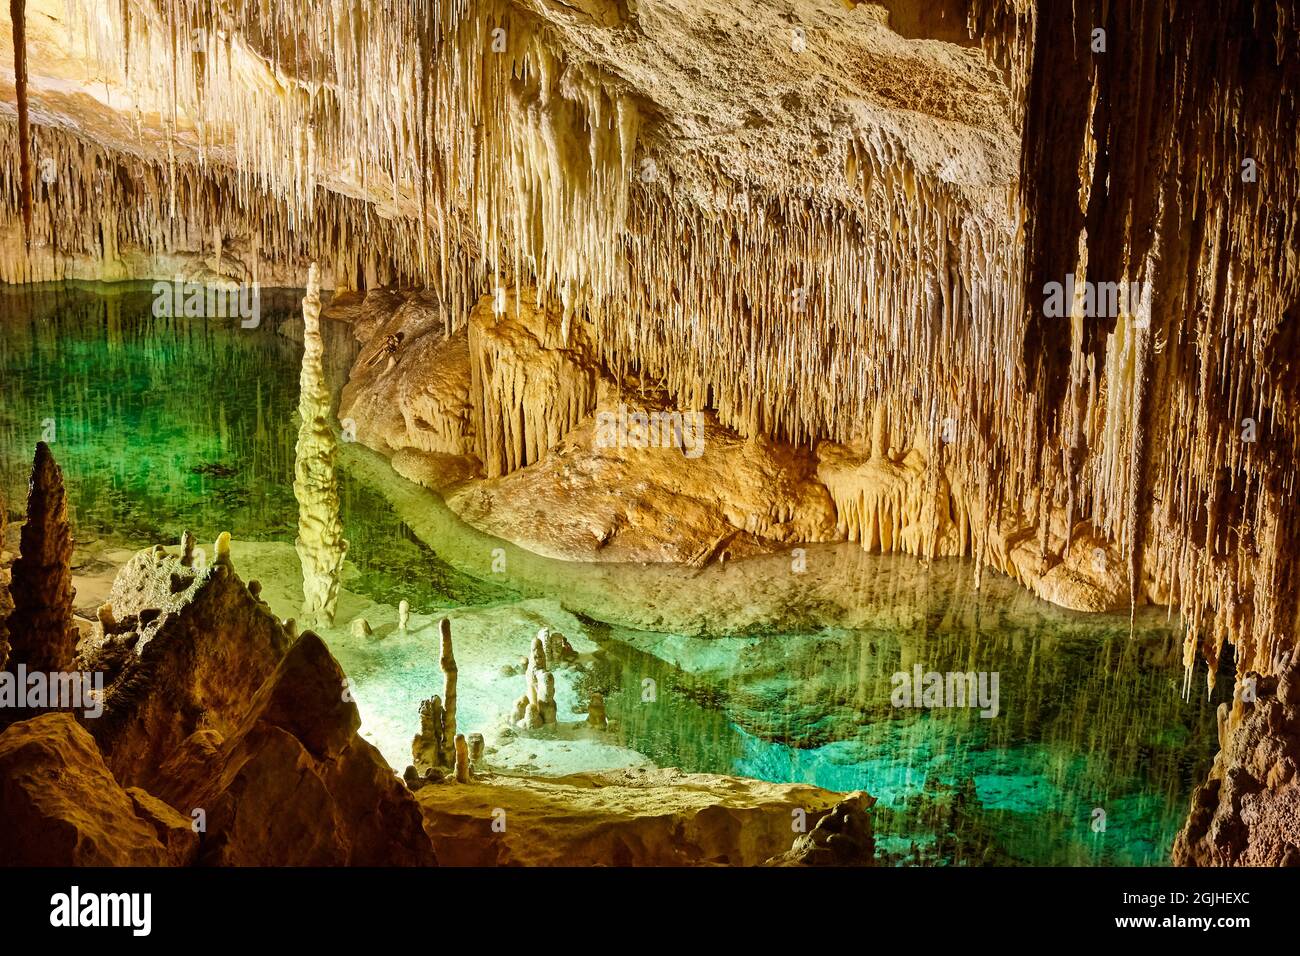 Eaux vertes dans une grotte. Cuevas del Drach. Majorque, Espagne Banque D'Images